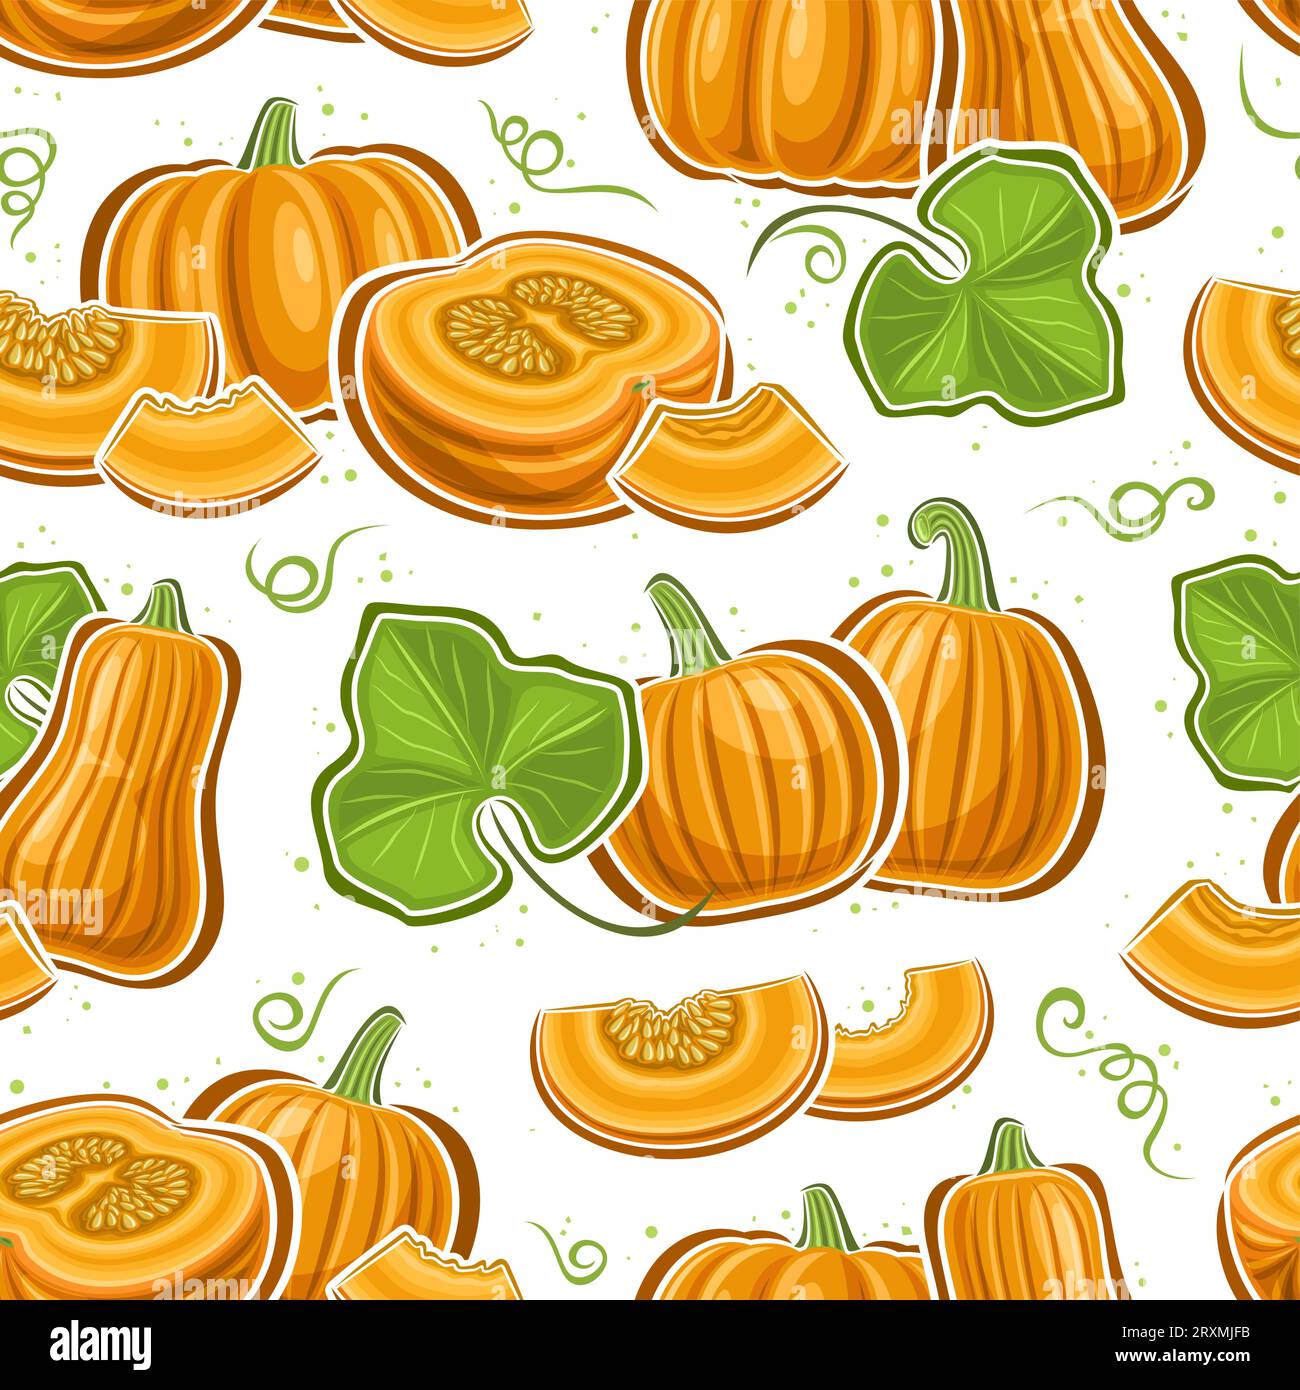 Vector Pumpkin Seamless Pattern, répétition carrée de fond avec des illustrations de compositions de nature morte de citrouille mûre avec des feuilles vertes pour envelopper pa Illustration de Vecteur